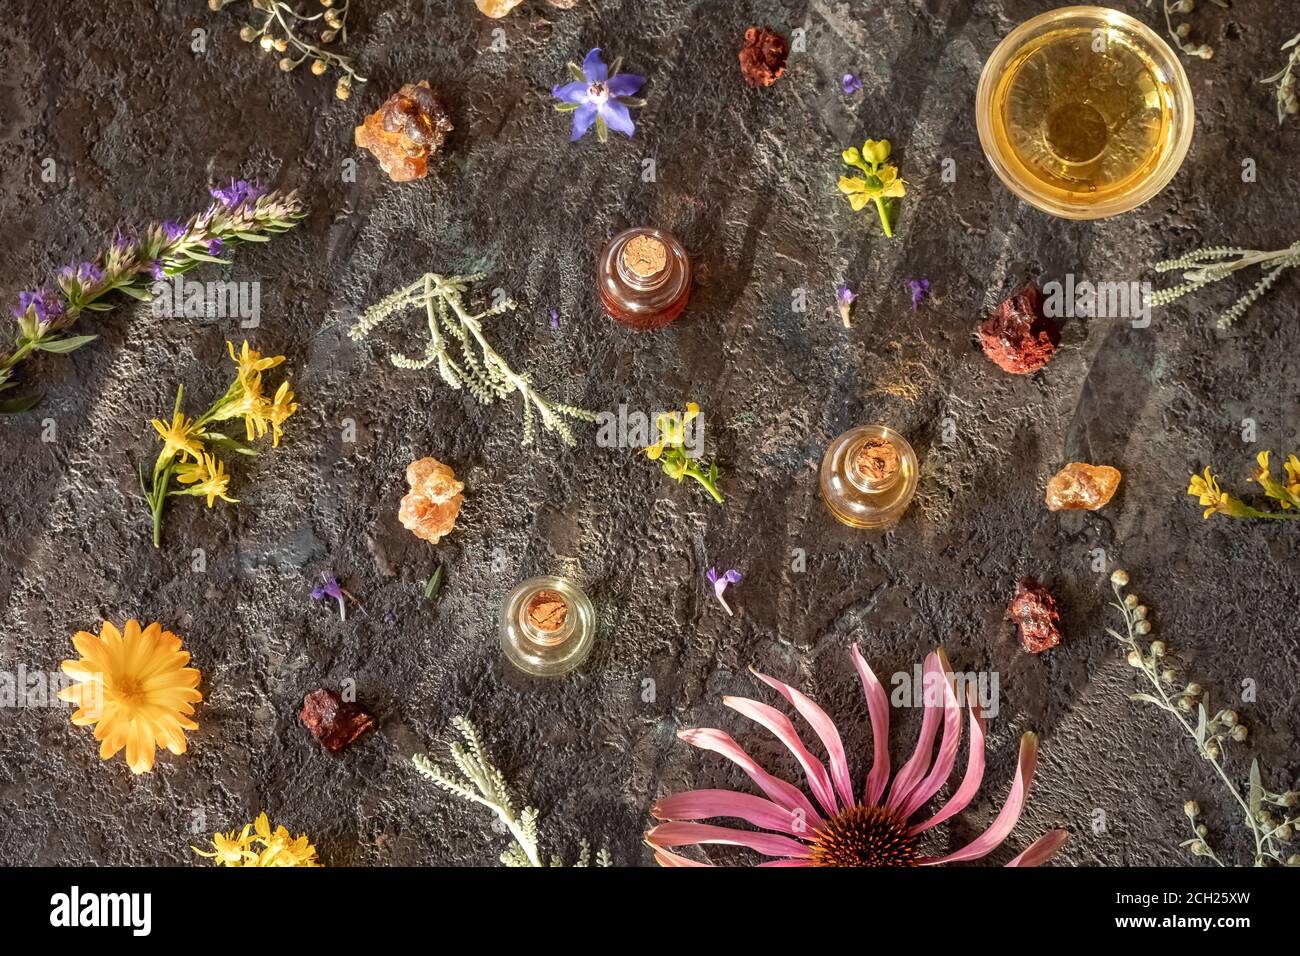 Selezione di oli essenziali con incenso, sangre de drago, wormwood, echinacea e altre erbe, vista dall'alto Foto Stock